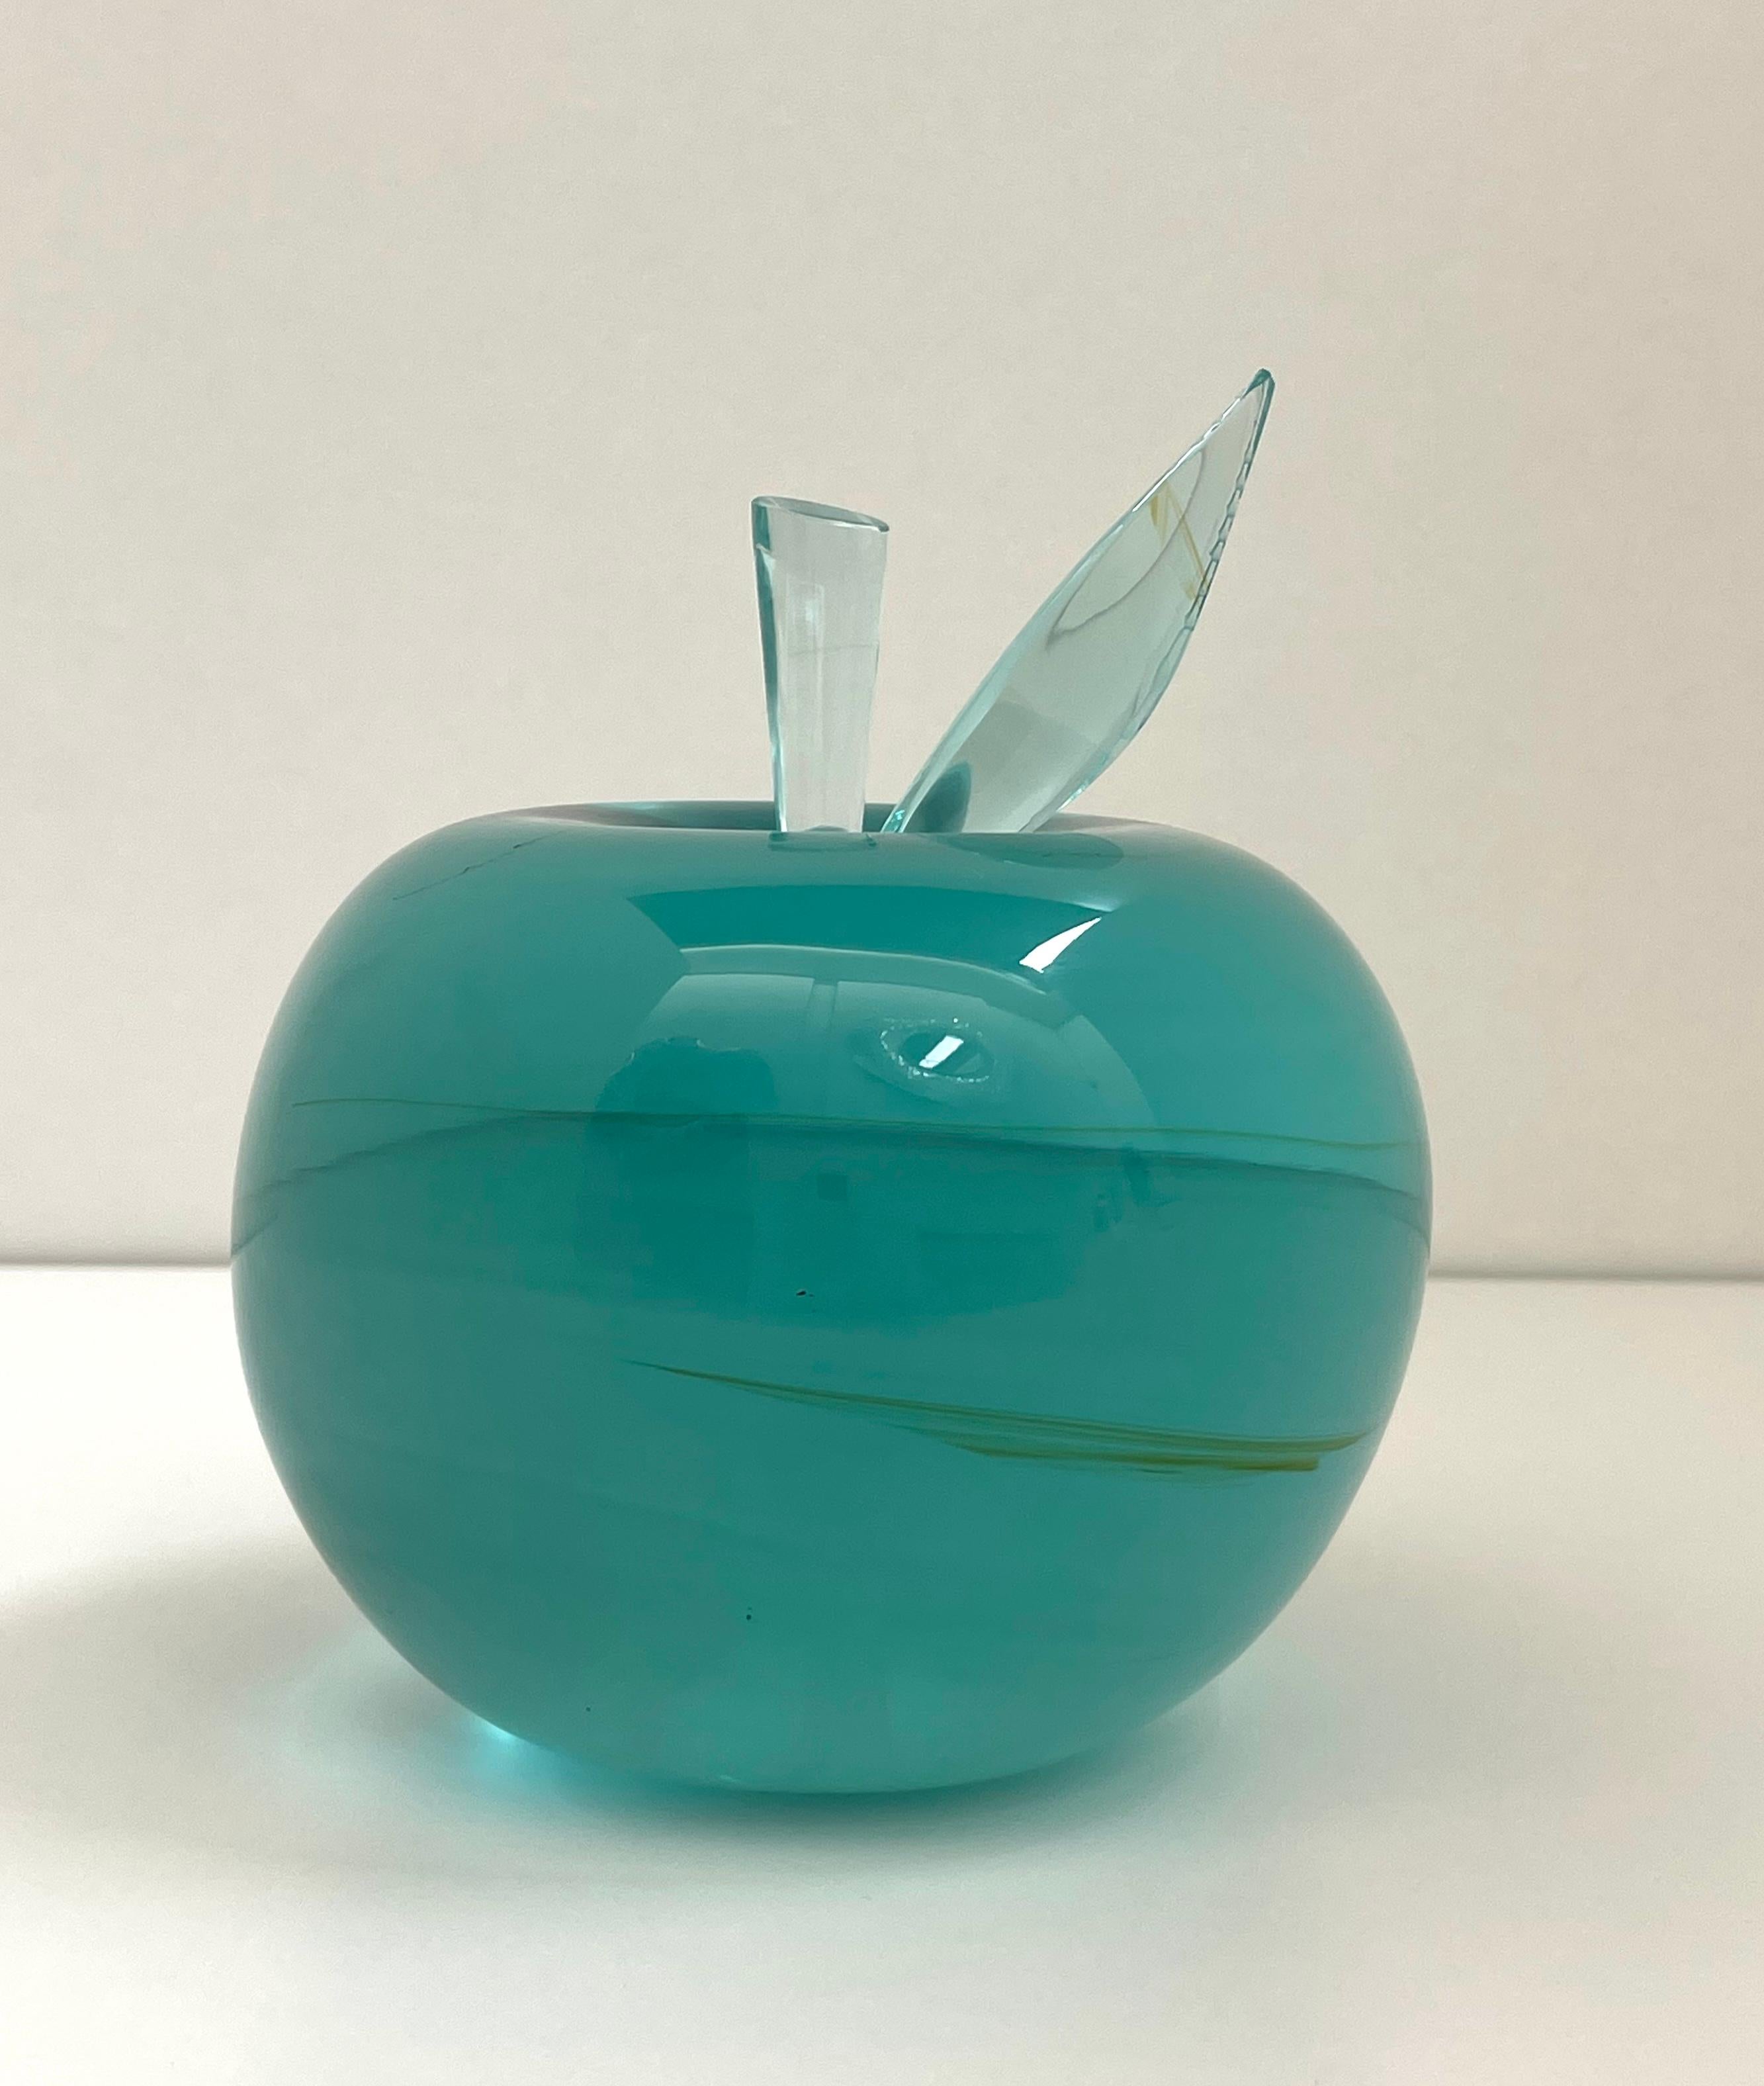 Dieser Apfel wurde aus einem ganzen natürlichen, rohen Aquamarinkristallblock hergestellt.
Dieser Block wurde mehrere Stunden lang von Hand geschliffen und poliert, bis er die Form eines Apfels und eine sehr glatte und glänzende Oberfläche